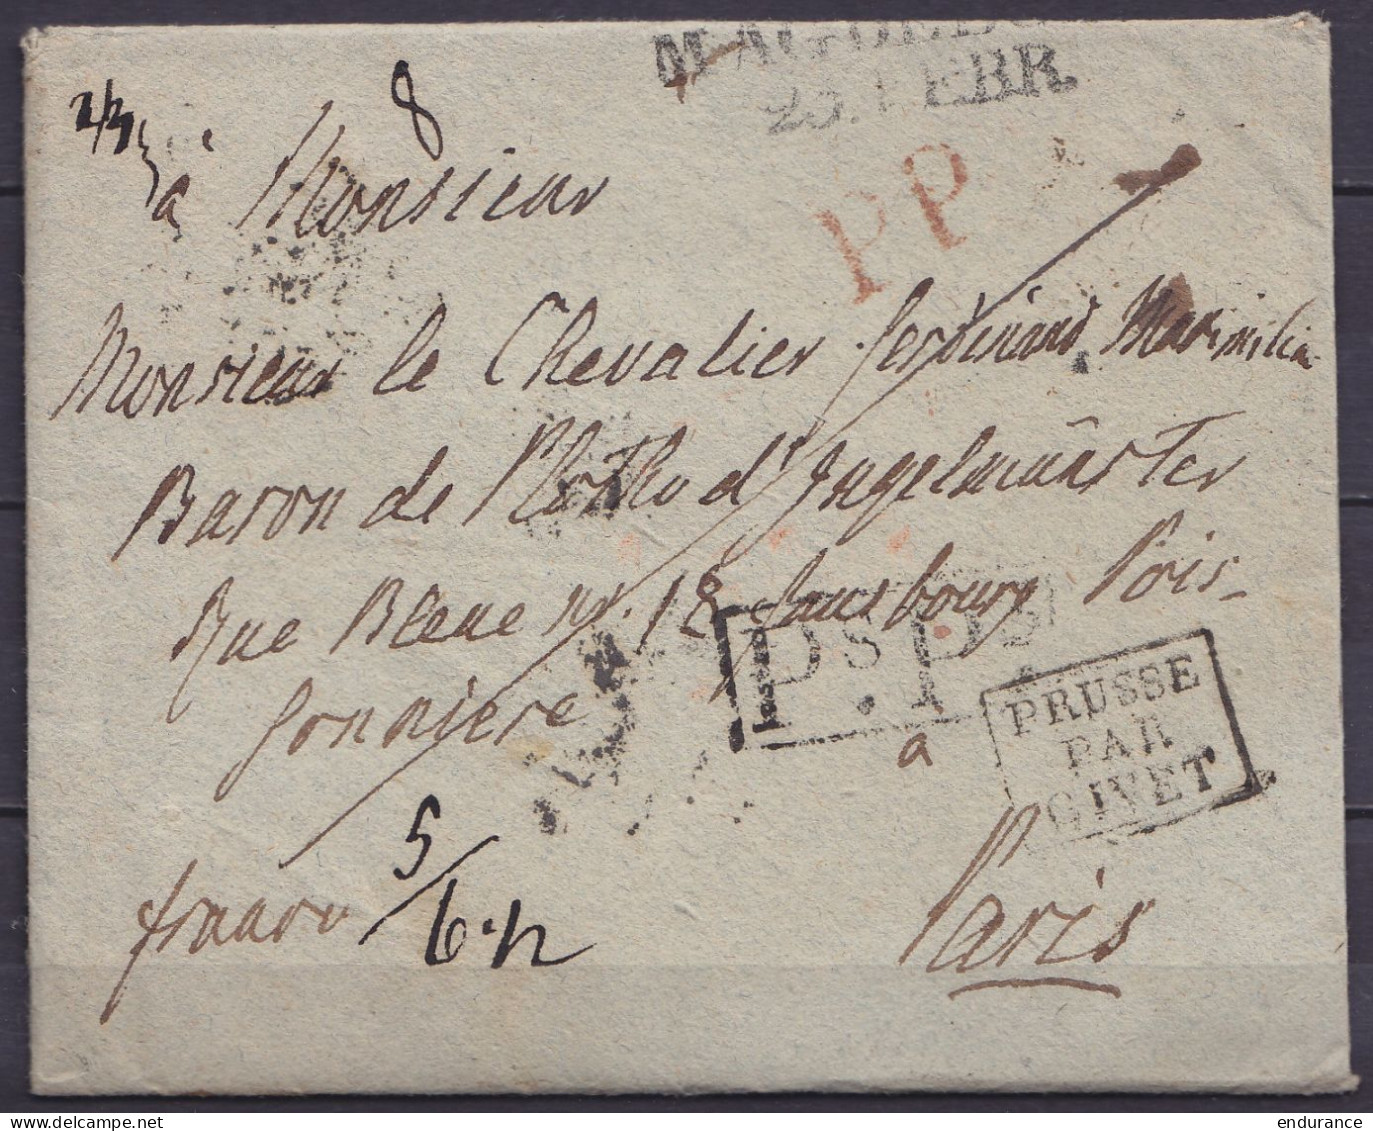 LAC Datée 19 Février 1820 De MAGDEBOURG Pour PARIS - Griffes "MAGDEBURG /20.FEBR.", "PP" & [Ps.Ps.] - Marque [PRUSSE PAR - Prephilately